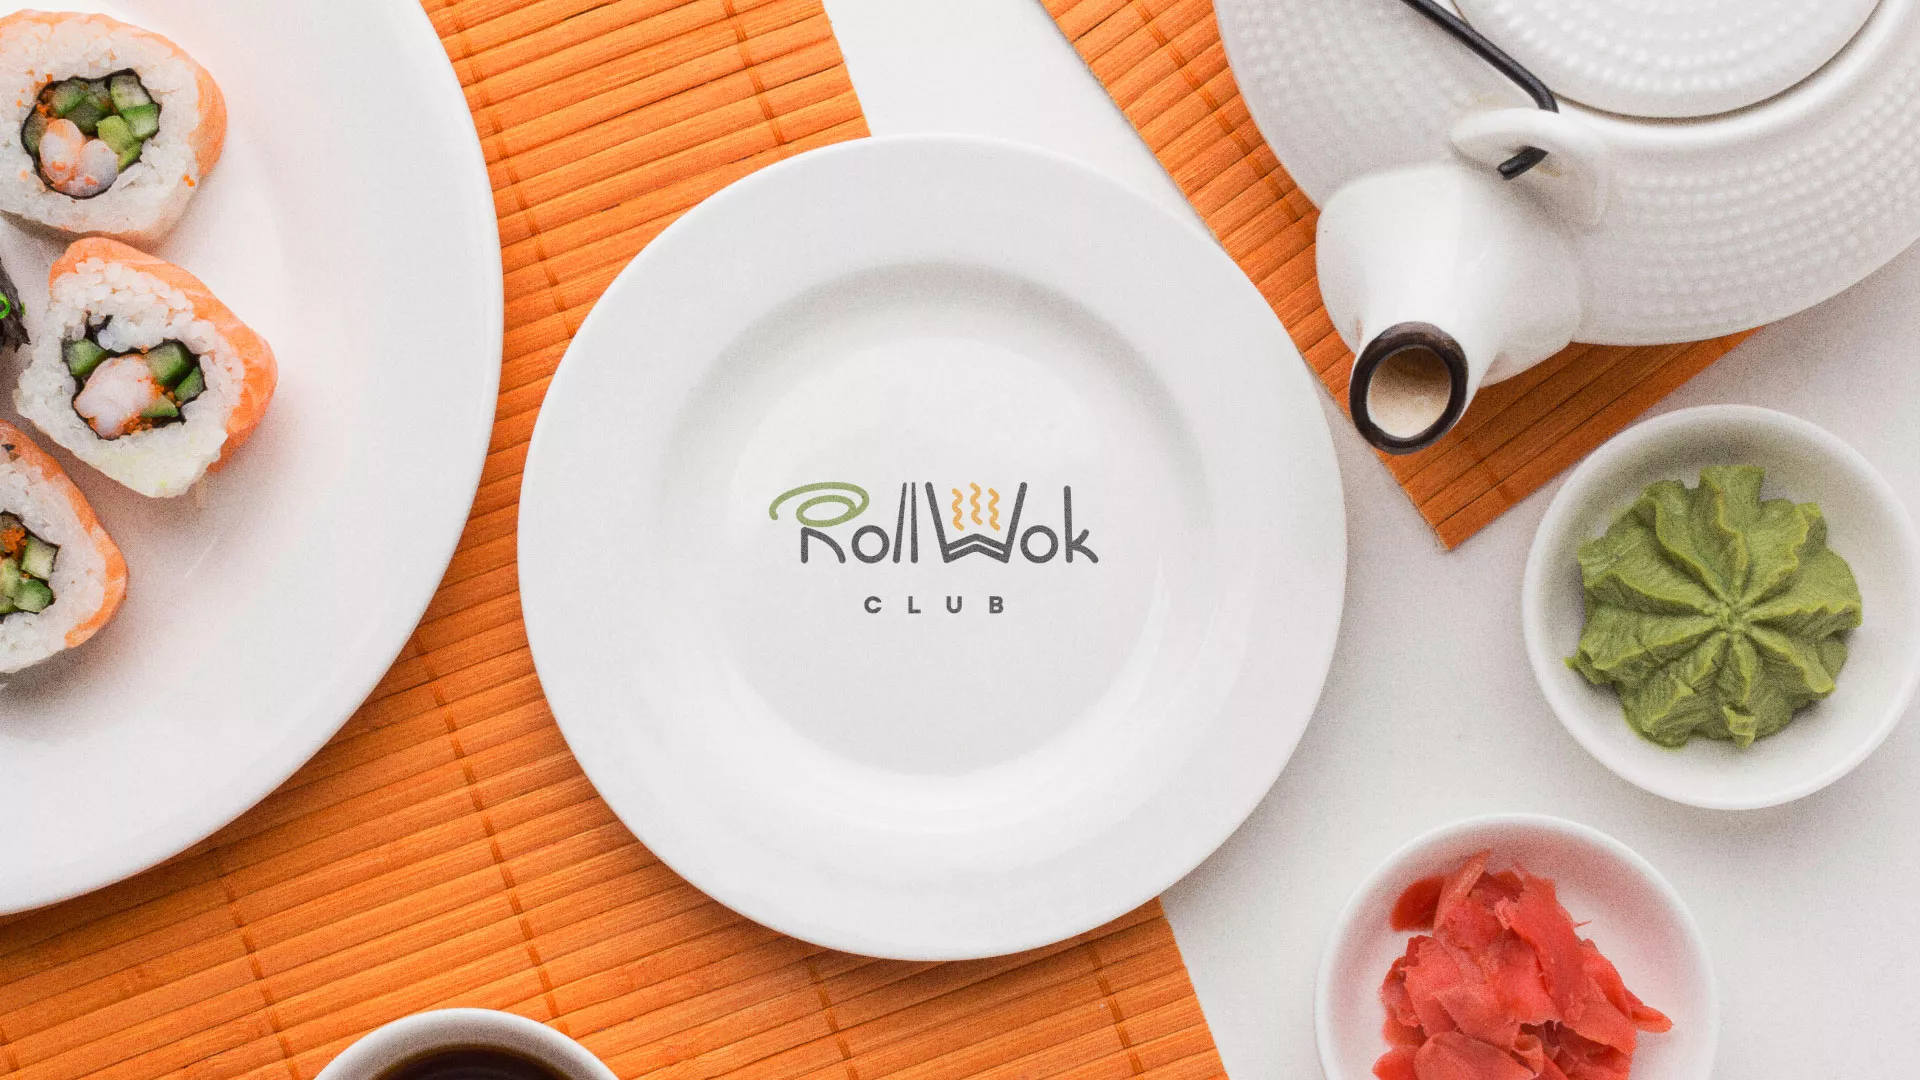 Разработка логотипа и фирменного стиля суши-бара «Roll Wok Club» в Тольятти